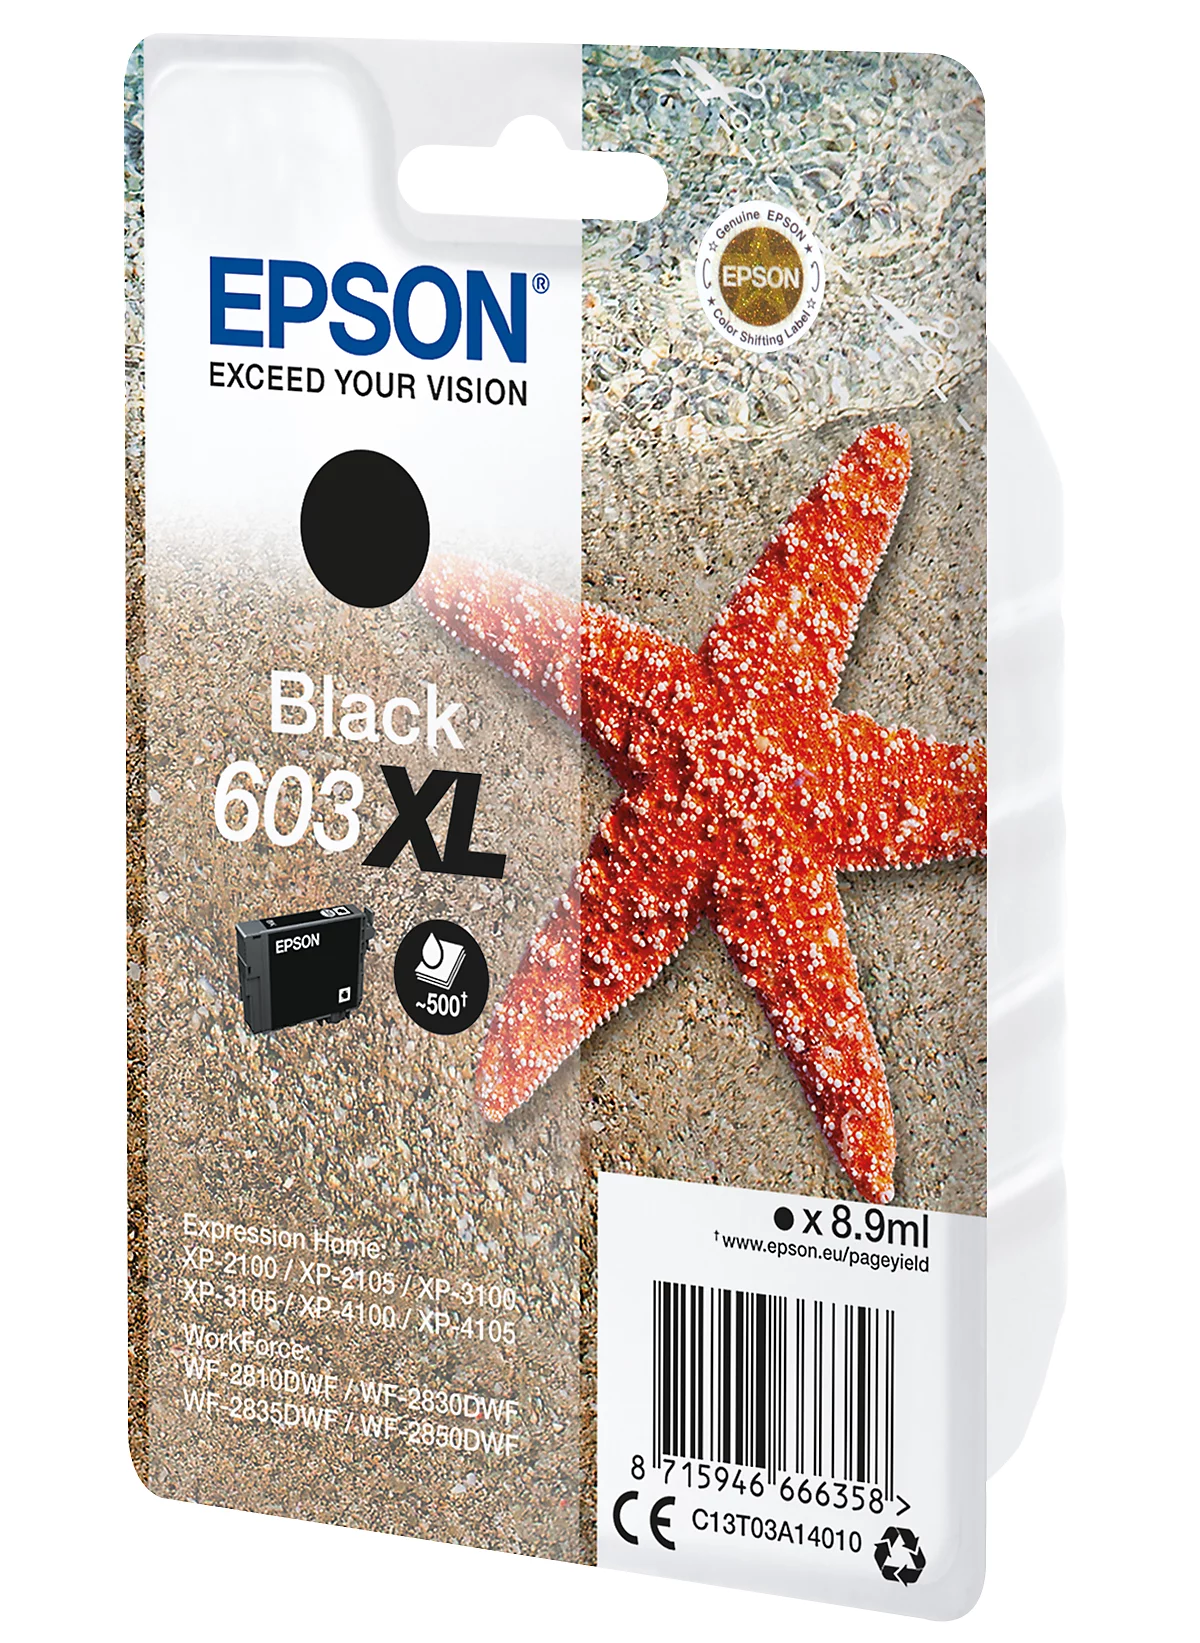 603 603XL cartouche puce resetter pour Epson XP-2100 XP-2105 XP